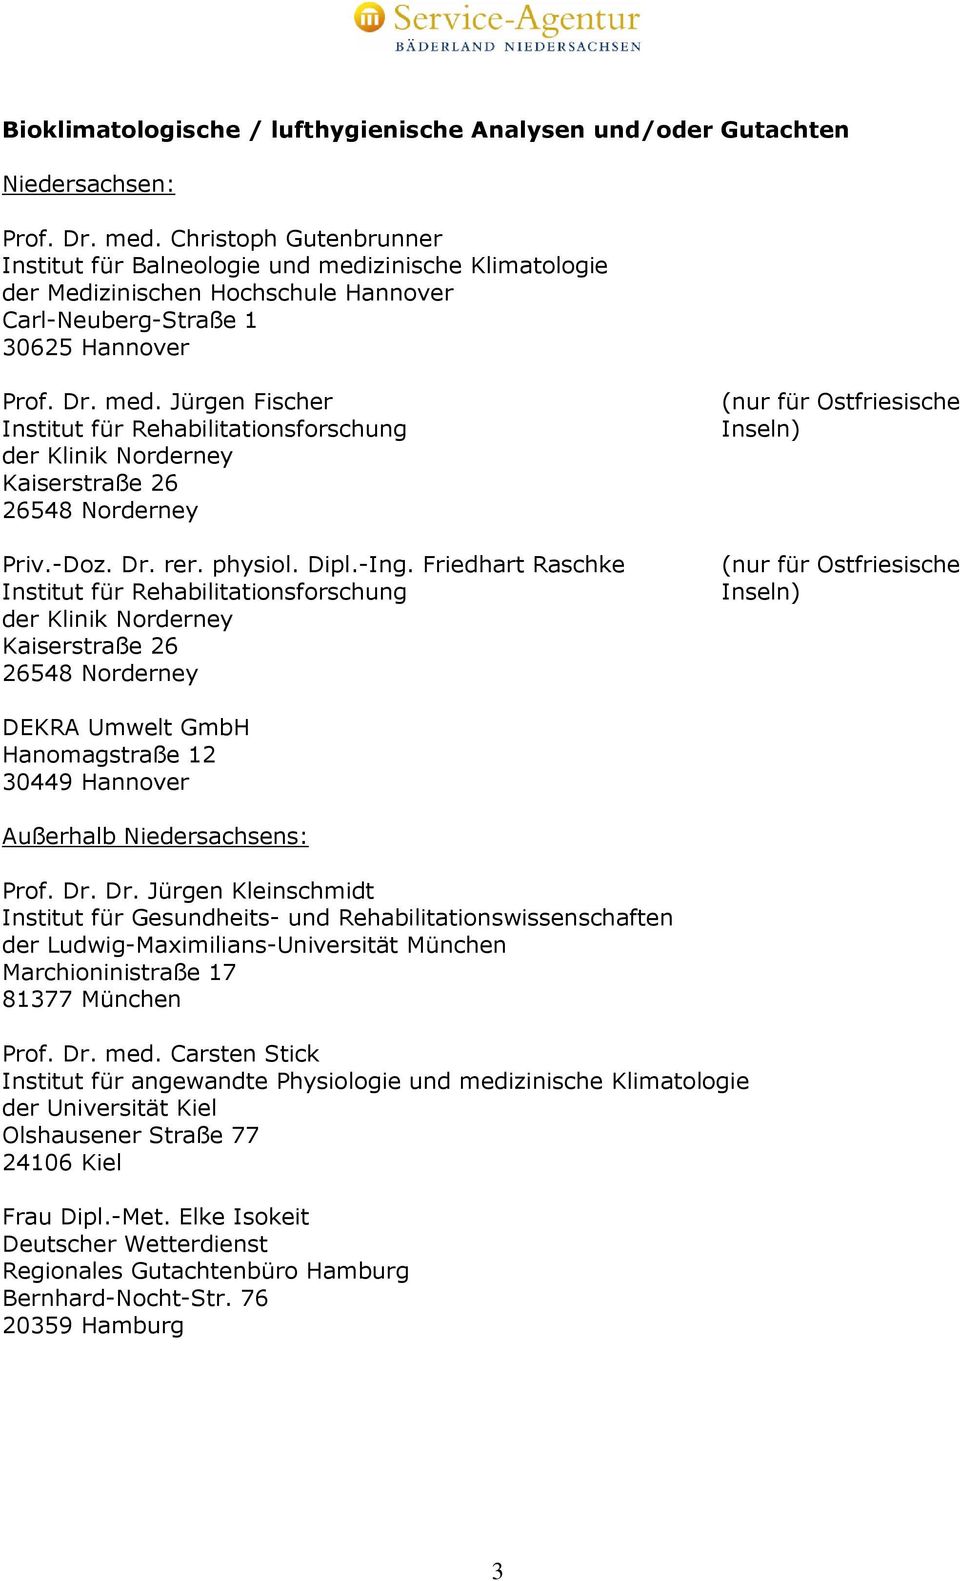 Carsten Stick Institut für angewandte Physiologie und medizinische Klimatologie der Universität Kiel Olshausener